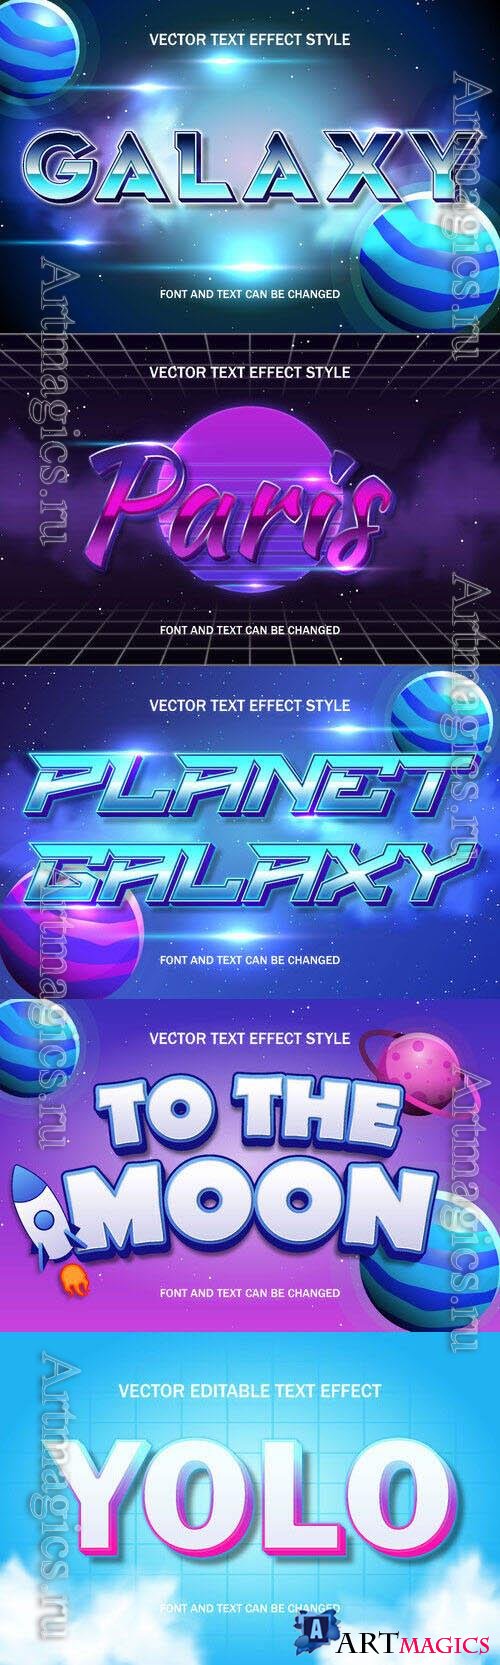 Vector 3d text editable, text effect font design
 set vol 86 